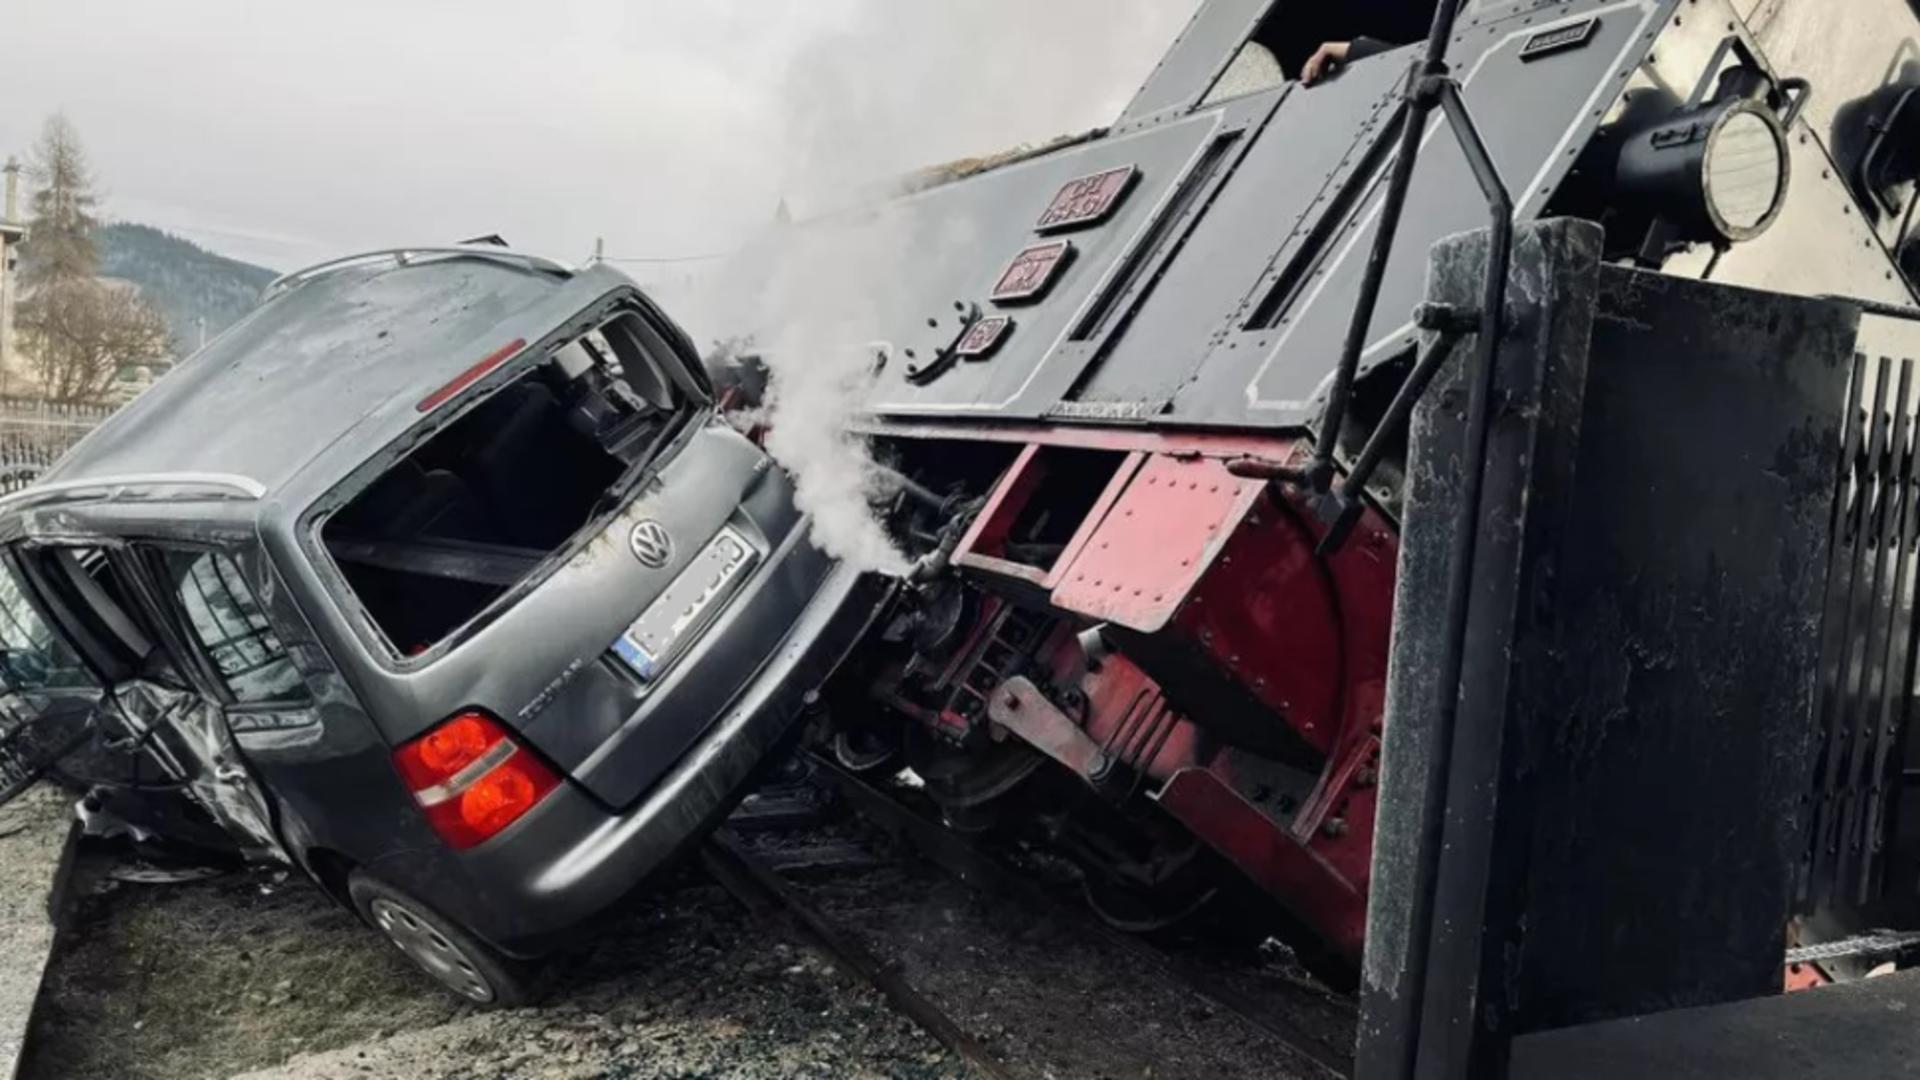 Imagini ȘOCANTE. Mocănița din Suceava, implicată într-un accident violent. În tren erau zeci de pasageri – VIDEO